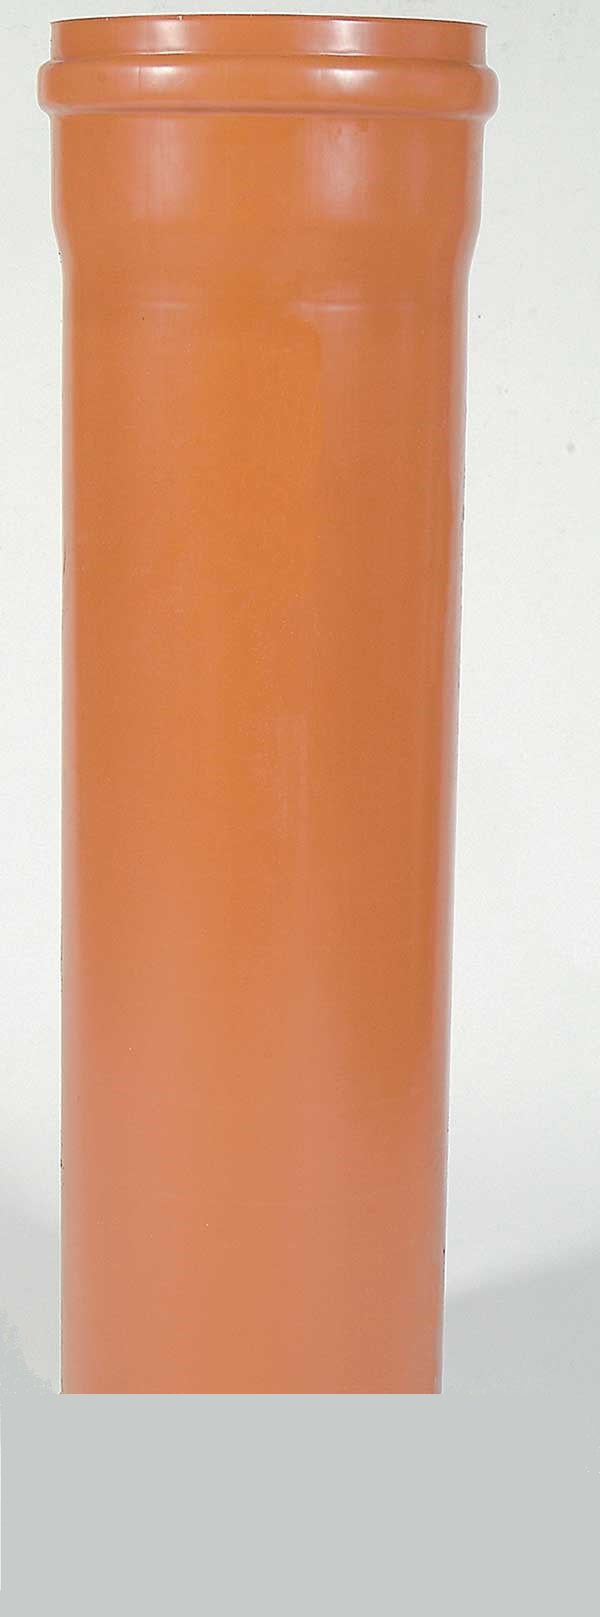 Schachtrohr PVC, Lnge 1000 mm, D 300 mm